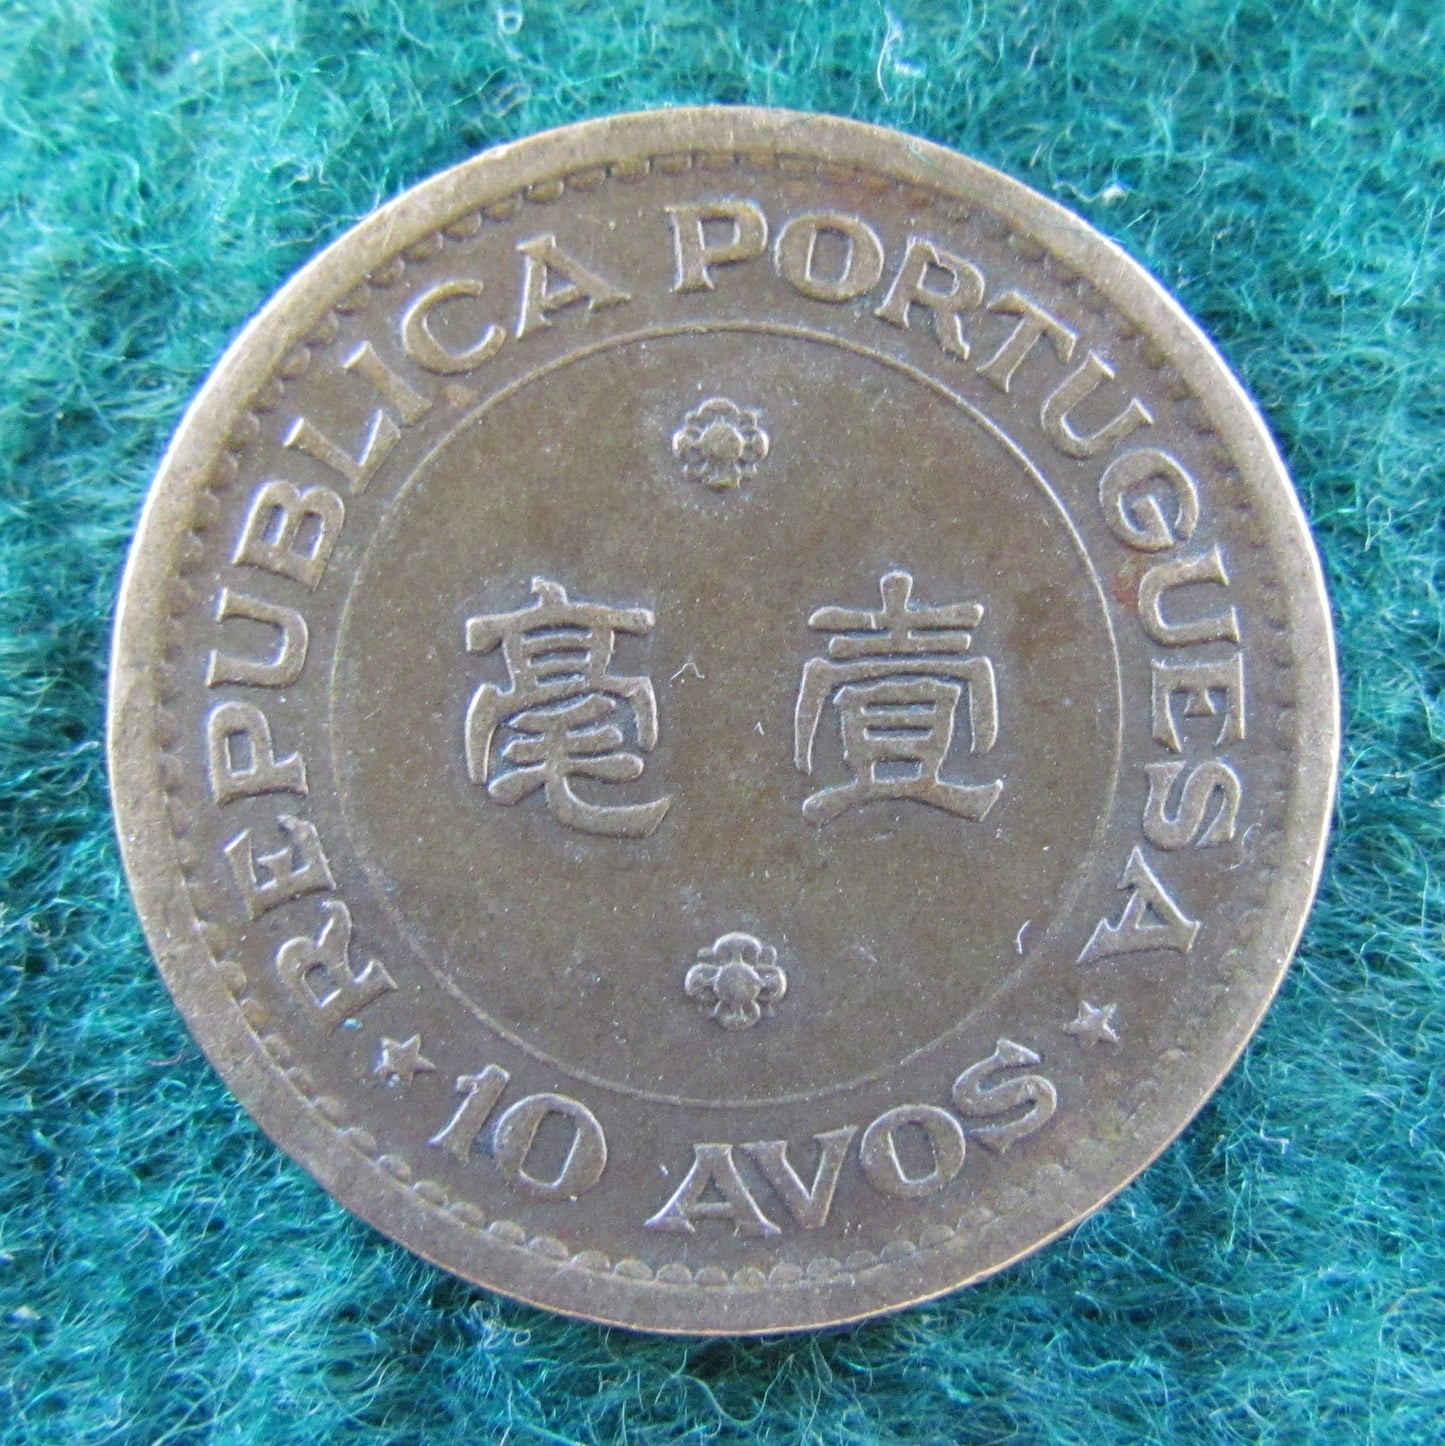 Macau Portuguese Republic 1976 10 Avos Coin - Circulated